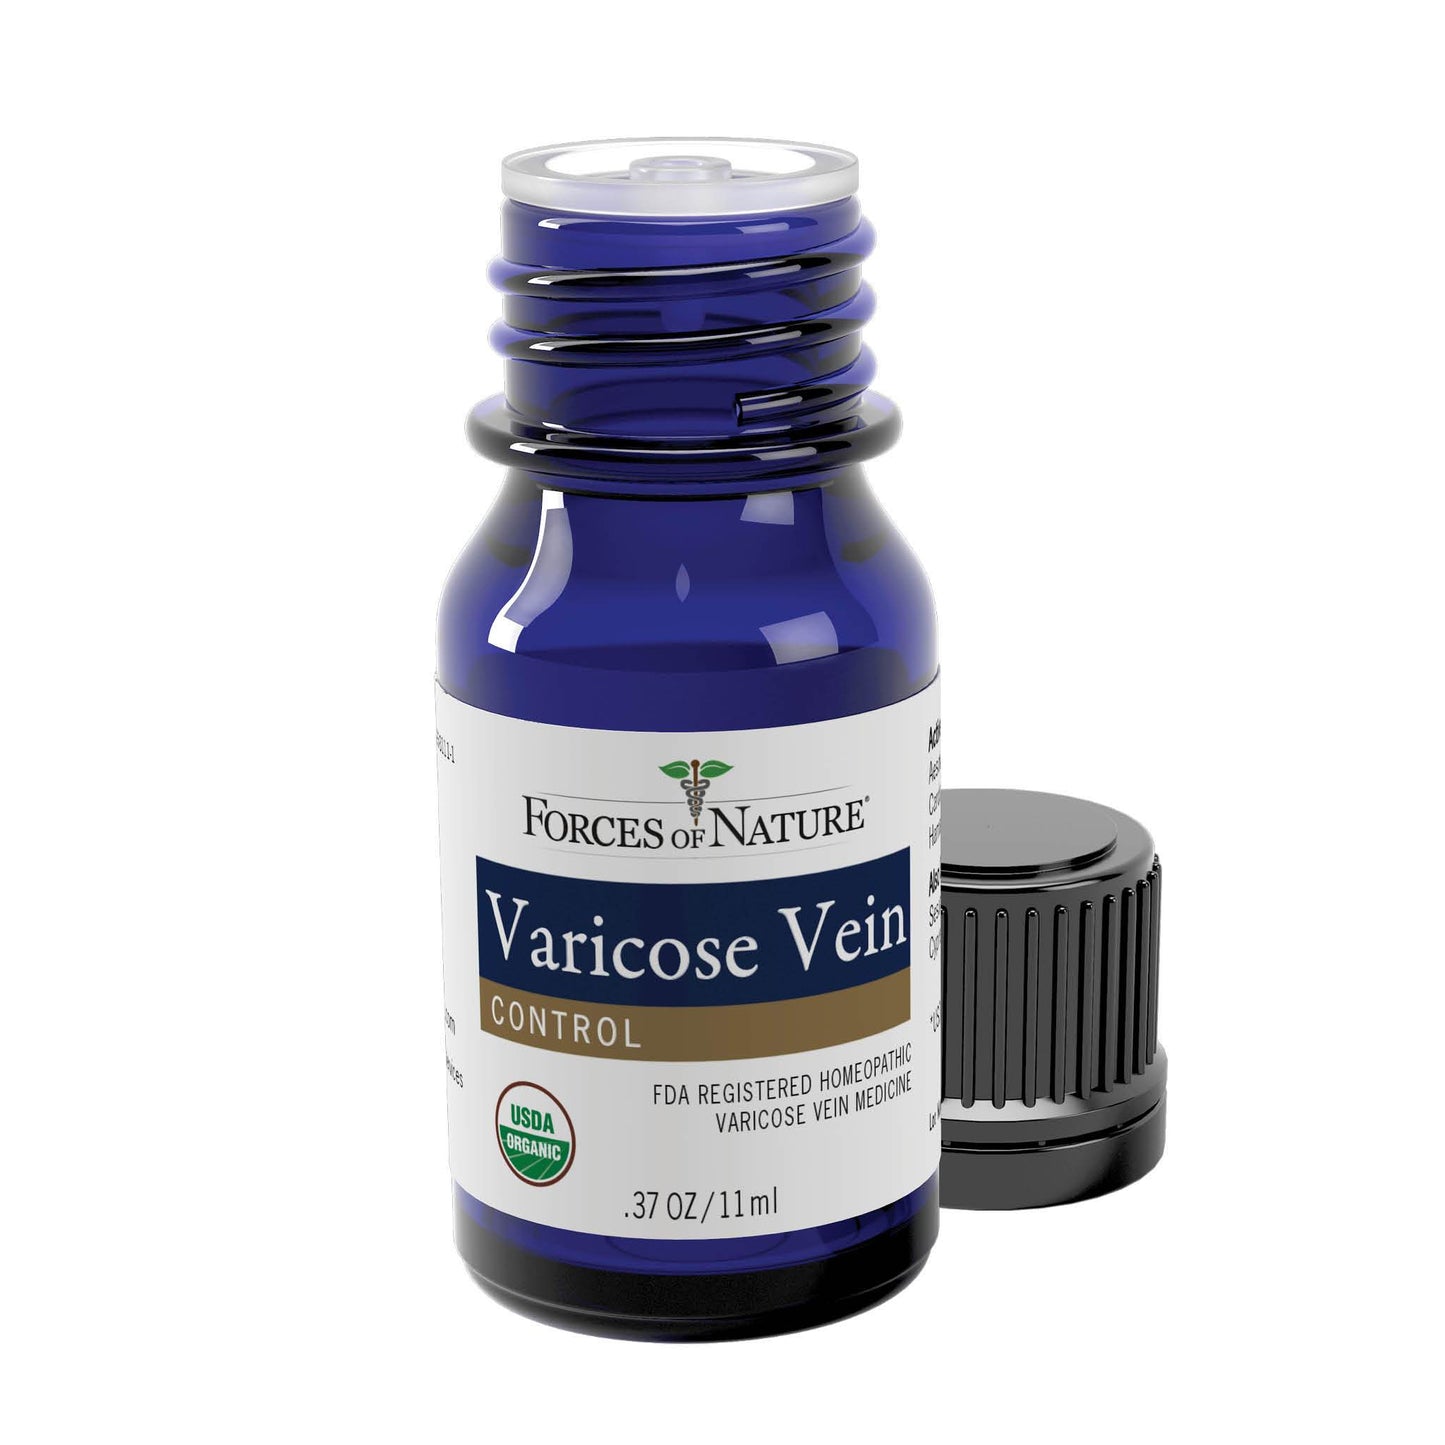 Varicose Vein & Spider Vein Treatment